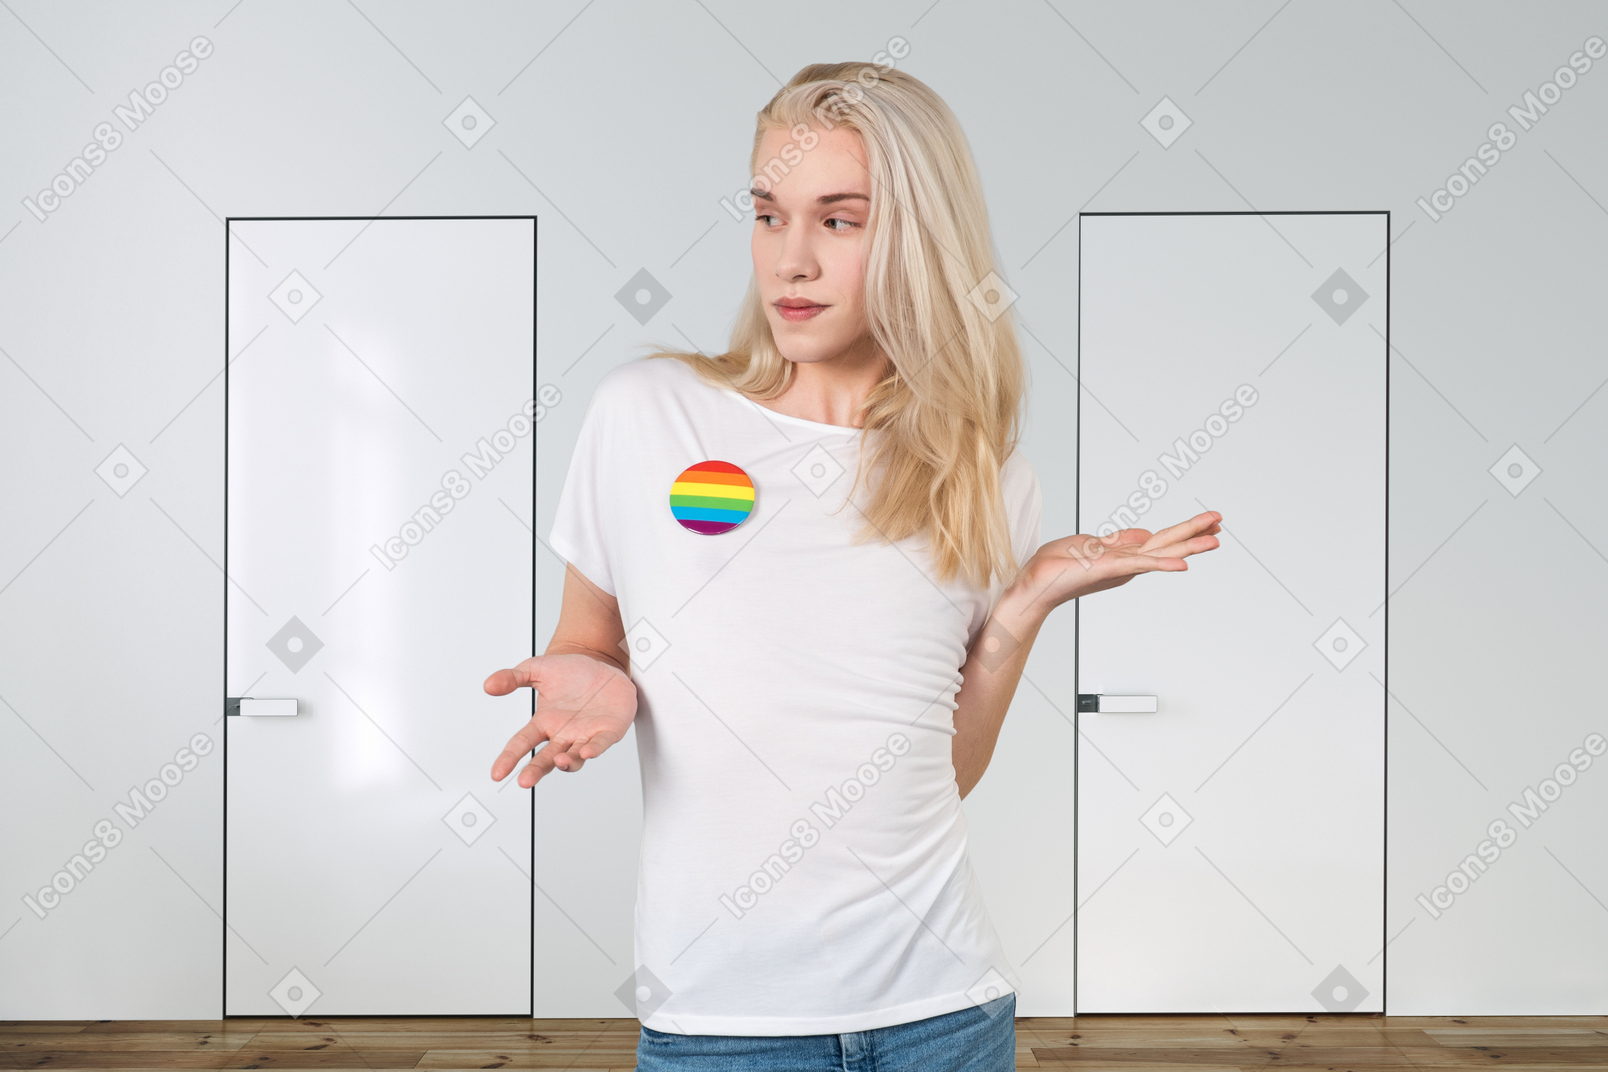 Pessoa genderqueer está escolhendo a porta